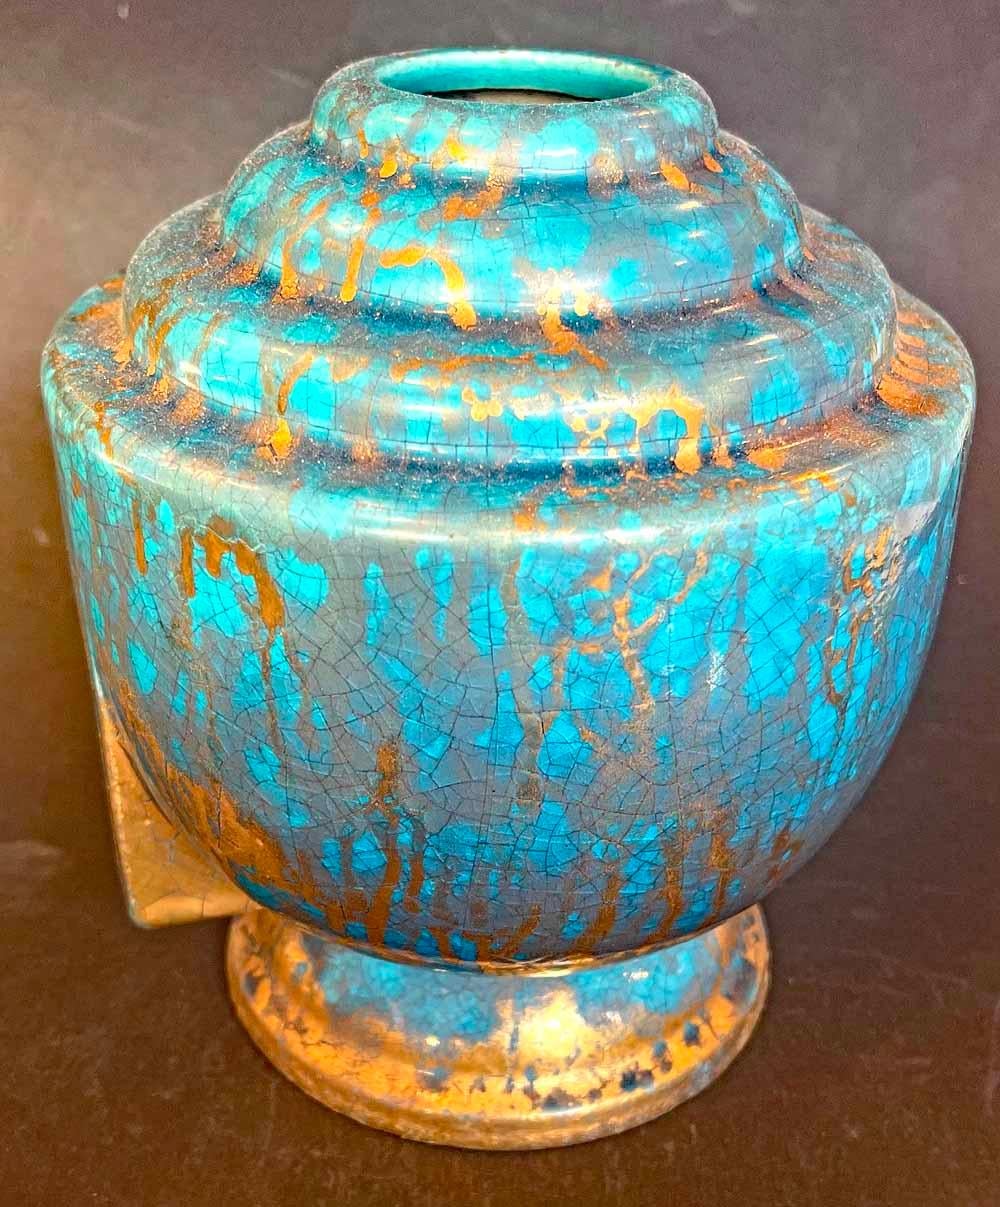 Ce vase classique de l'Art déco français présente une caractéristique majeure de l'époque : une série de décrochements depuis son corps incurvé jusqu'au col situé au-dessus, tous brillamment émaillés dans un bleu-vert méditerranéen avec de riches